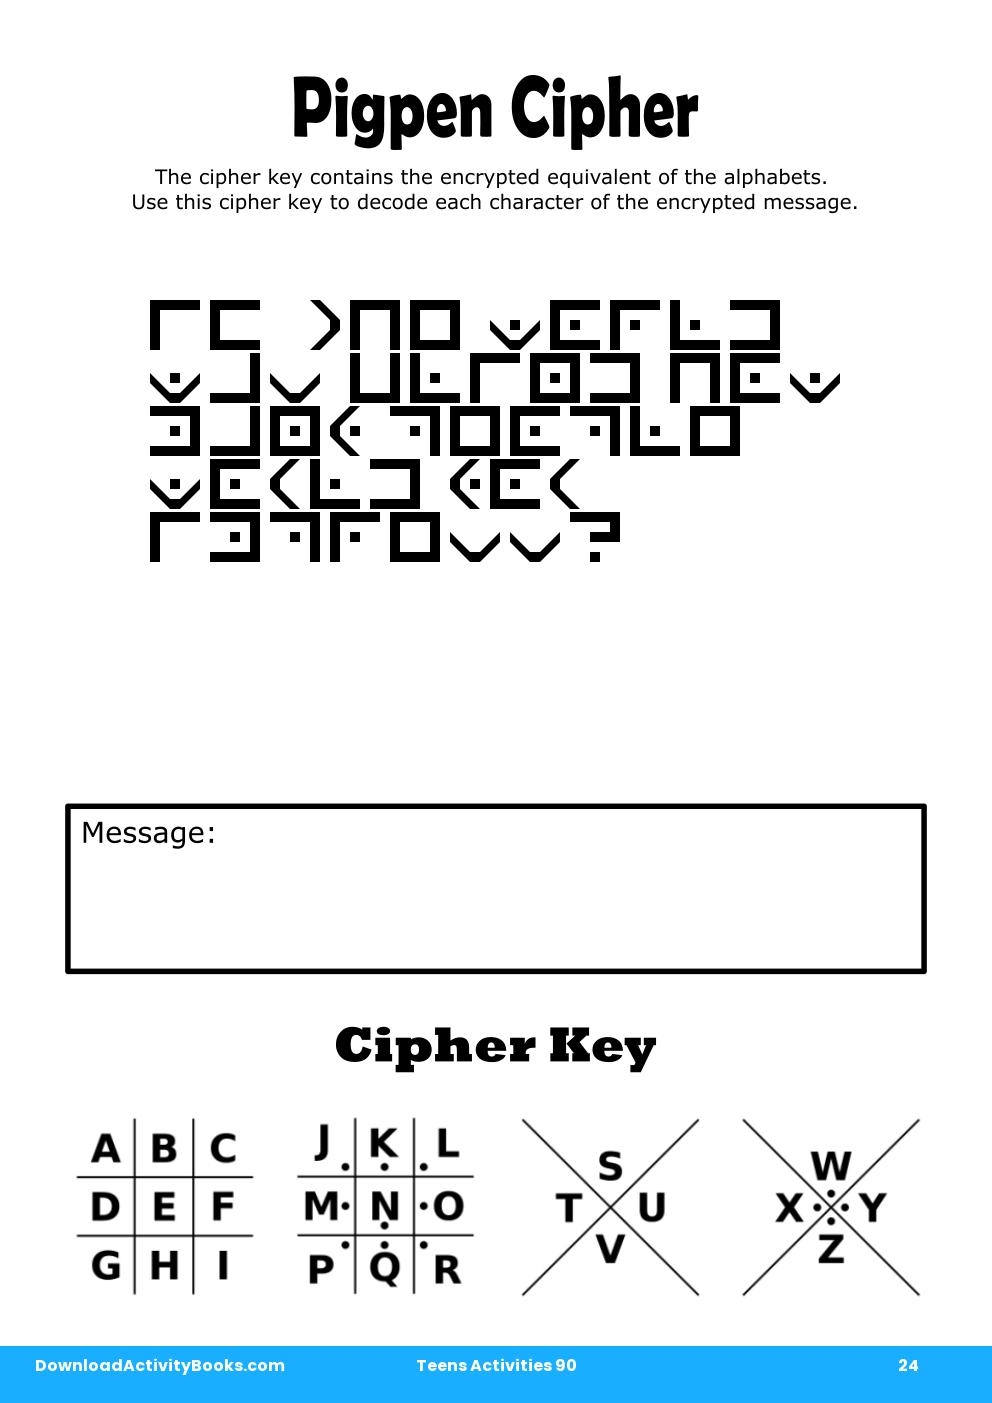 Pigpen Cipher in Teens Activities 90